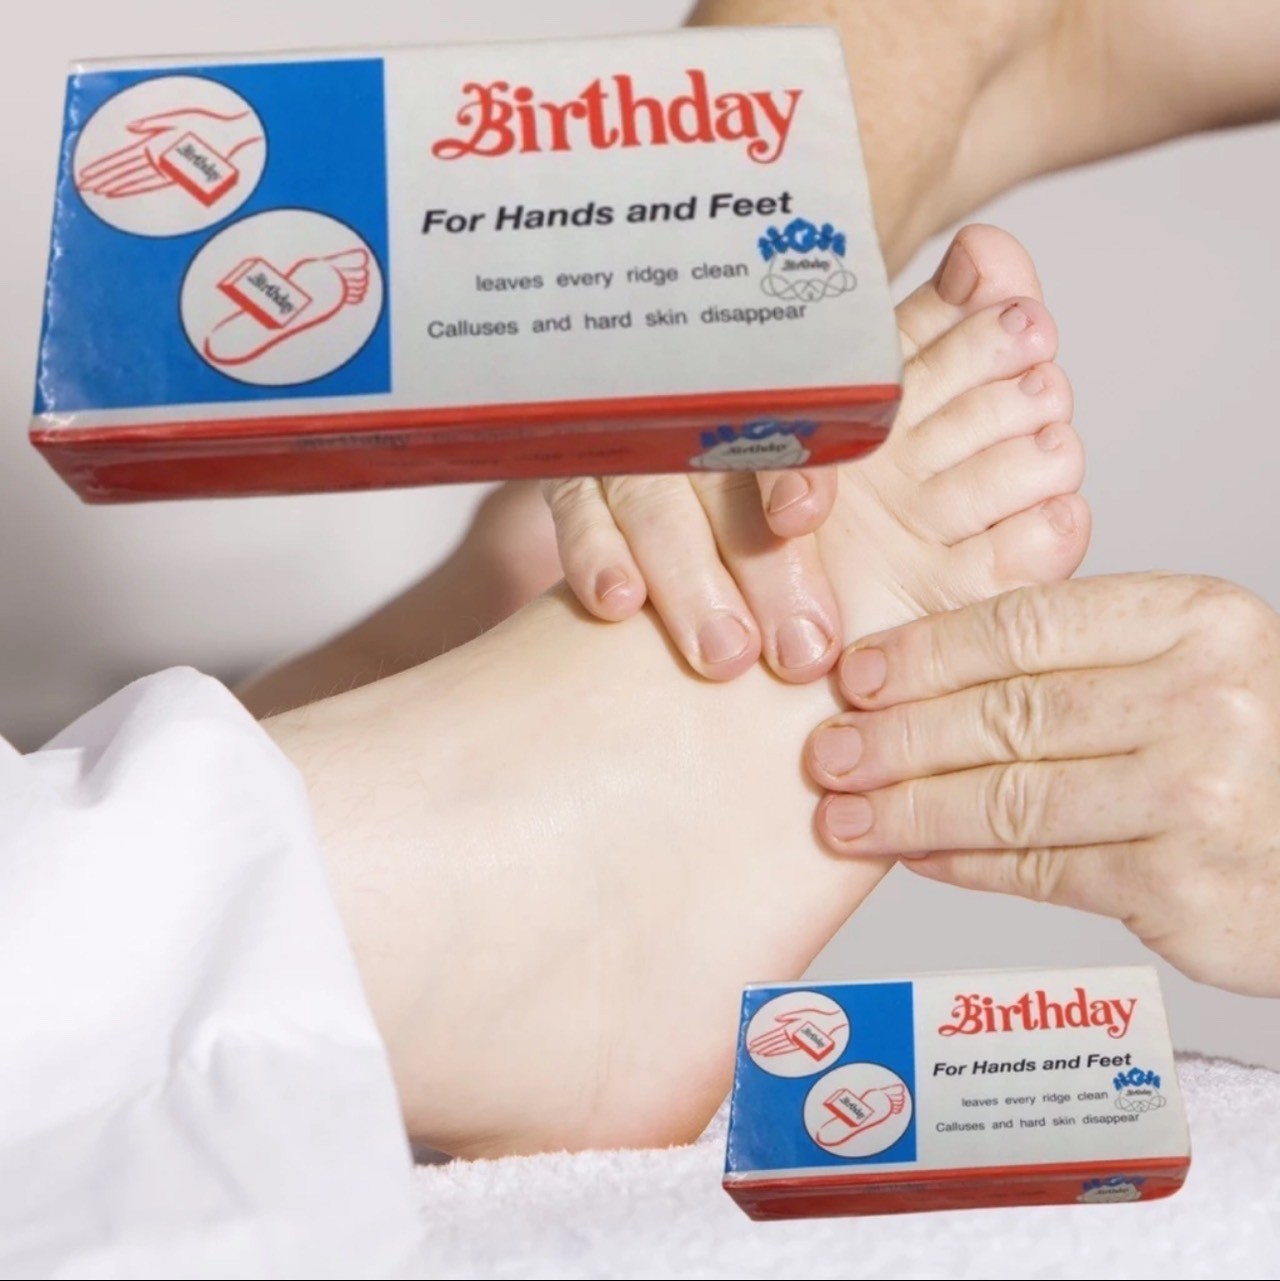 อุปกรณ์เพื่อสุขภาพเท้า โฟมขัดเท้า เบิร์ดเดย์ Birthday โฟมขัดส้นเท้าแตก ส้นเท้าแตก ขัดได้ทั้งมือ เท้า (  คละสี 1 ชิ้น  ) ที่ขัดส้นเท้าแตก